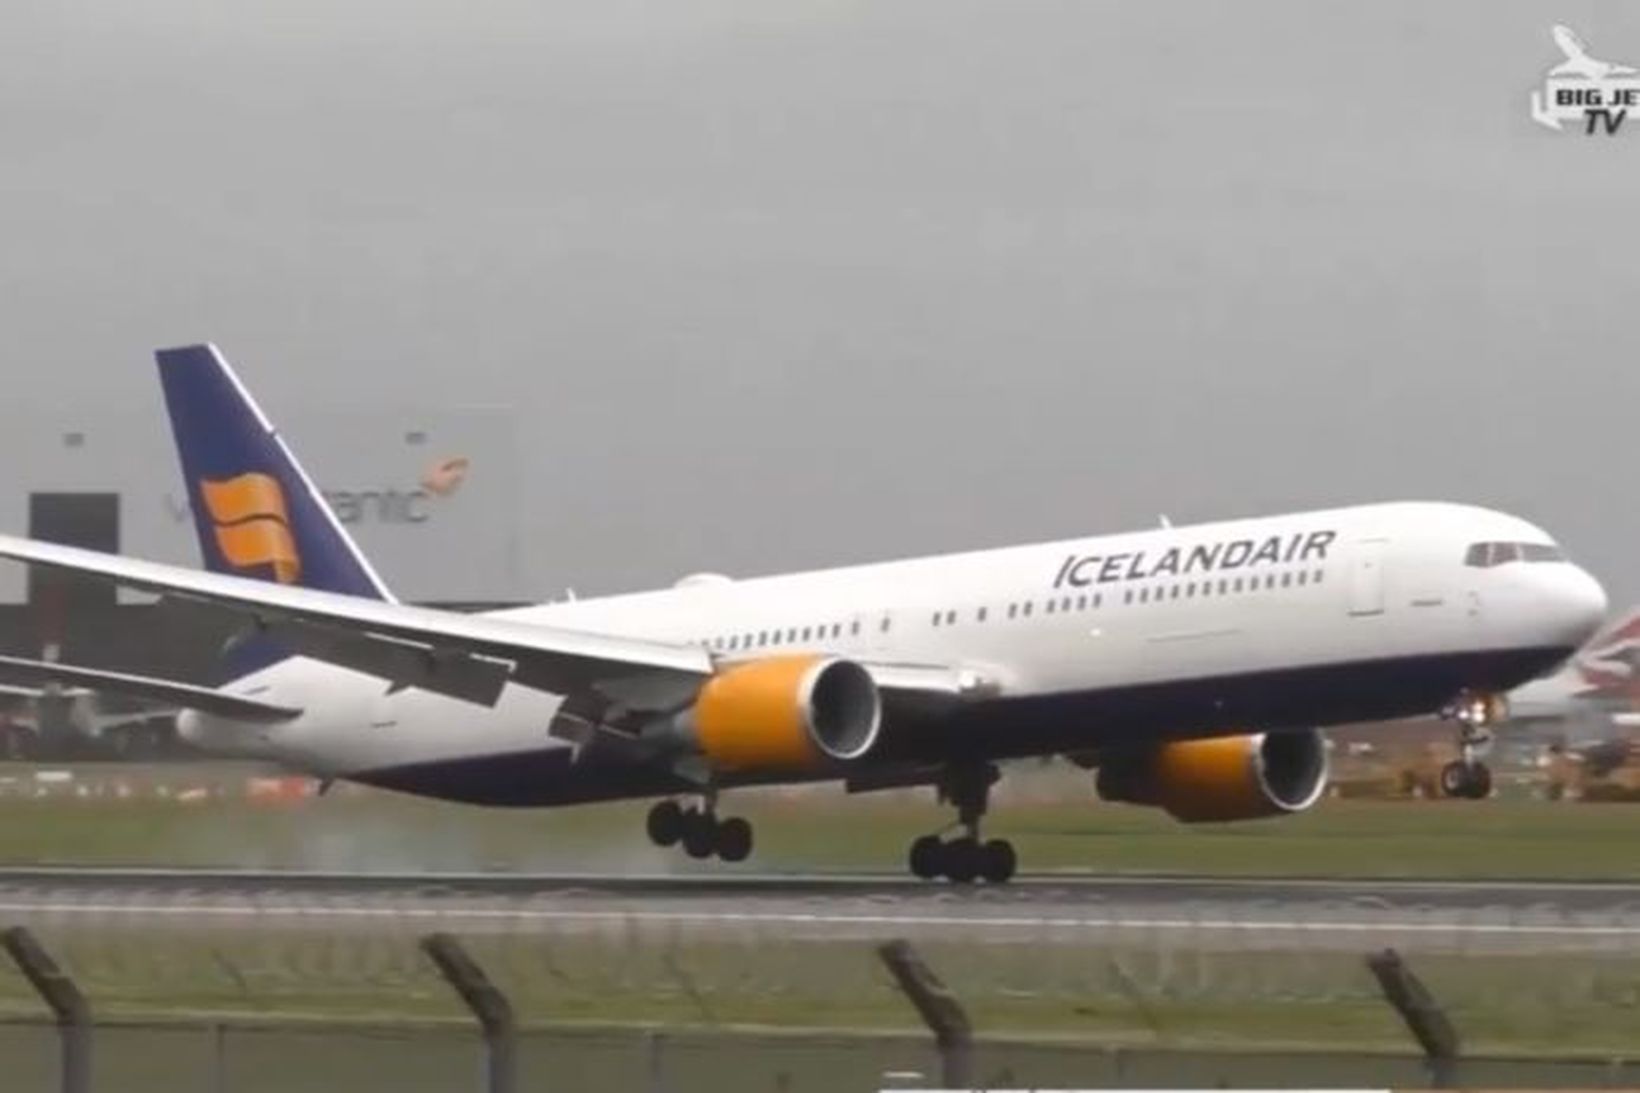 Lending vélar Icelandair er sögð ótrúleg á síðu Big Jet …